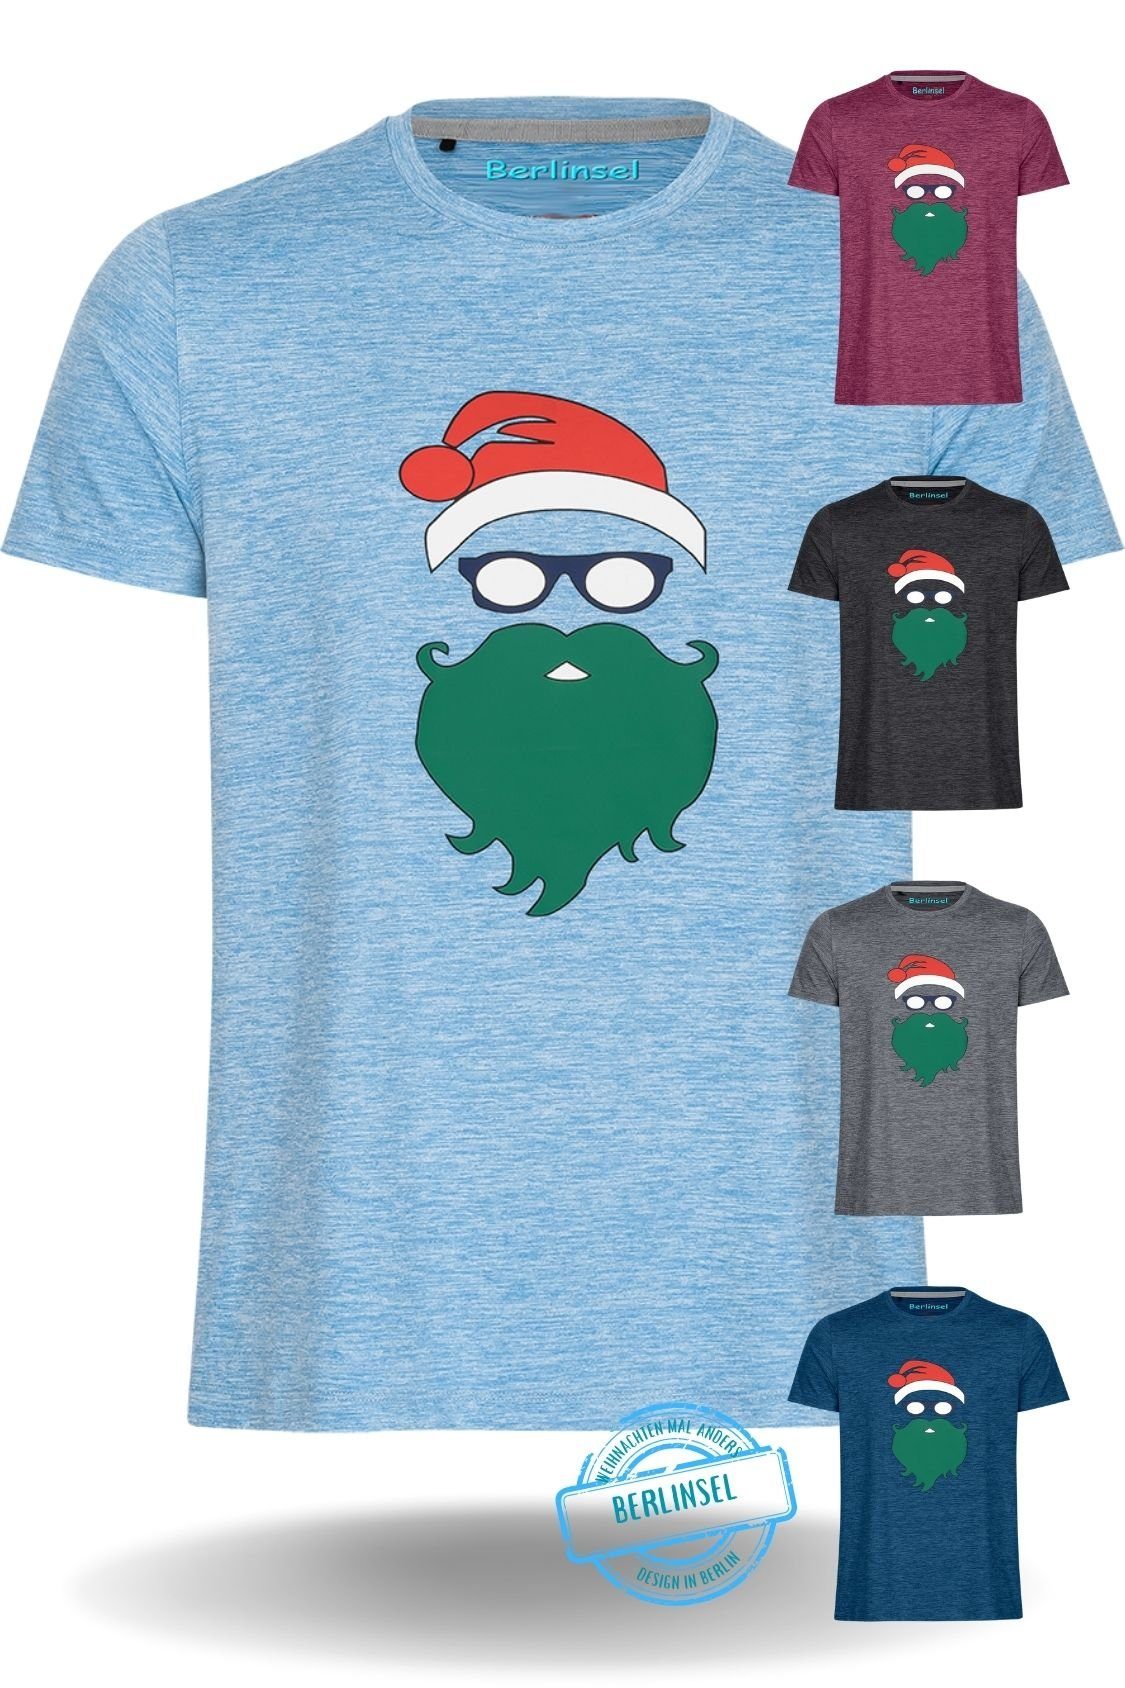 Weihnachtsgeschenk, hellblau Weihnachtsshirt Berlinsel Herren Weihnachtsfeier, Männer Weihnachtsoutfit T-Shirt Printshirt Weihnachtsfoto